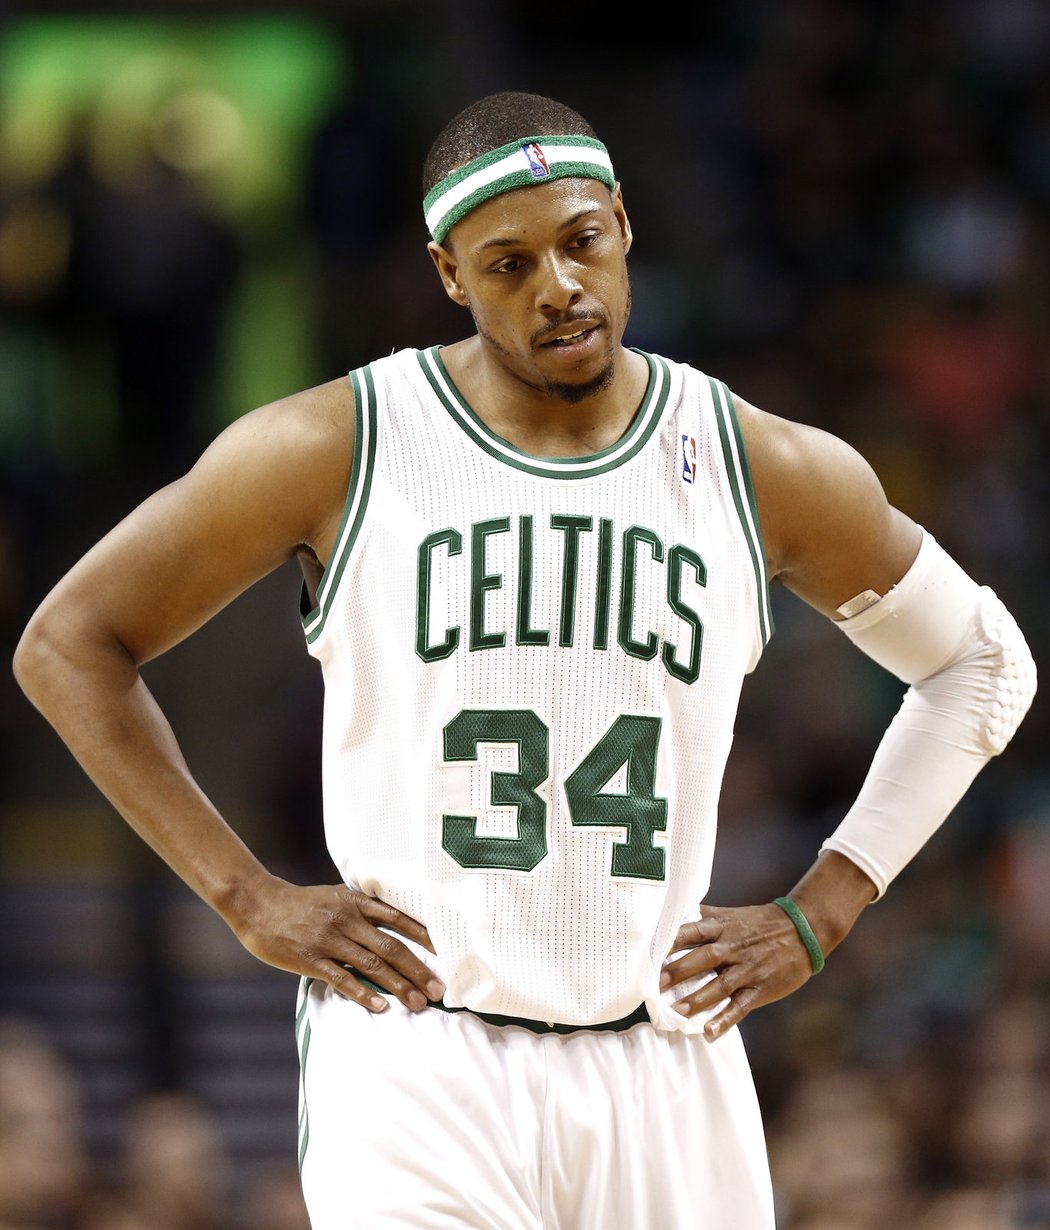 Zápas basketbalistů Celtics byl kvůli tragédii úplně zrušen.